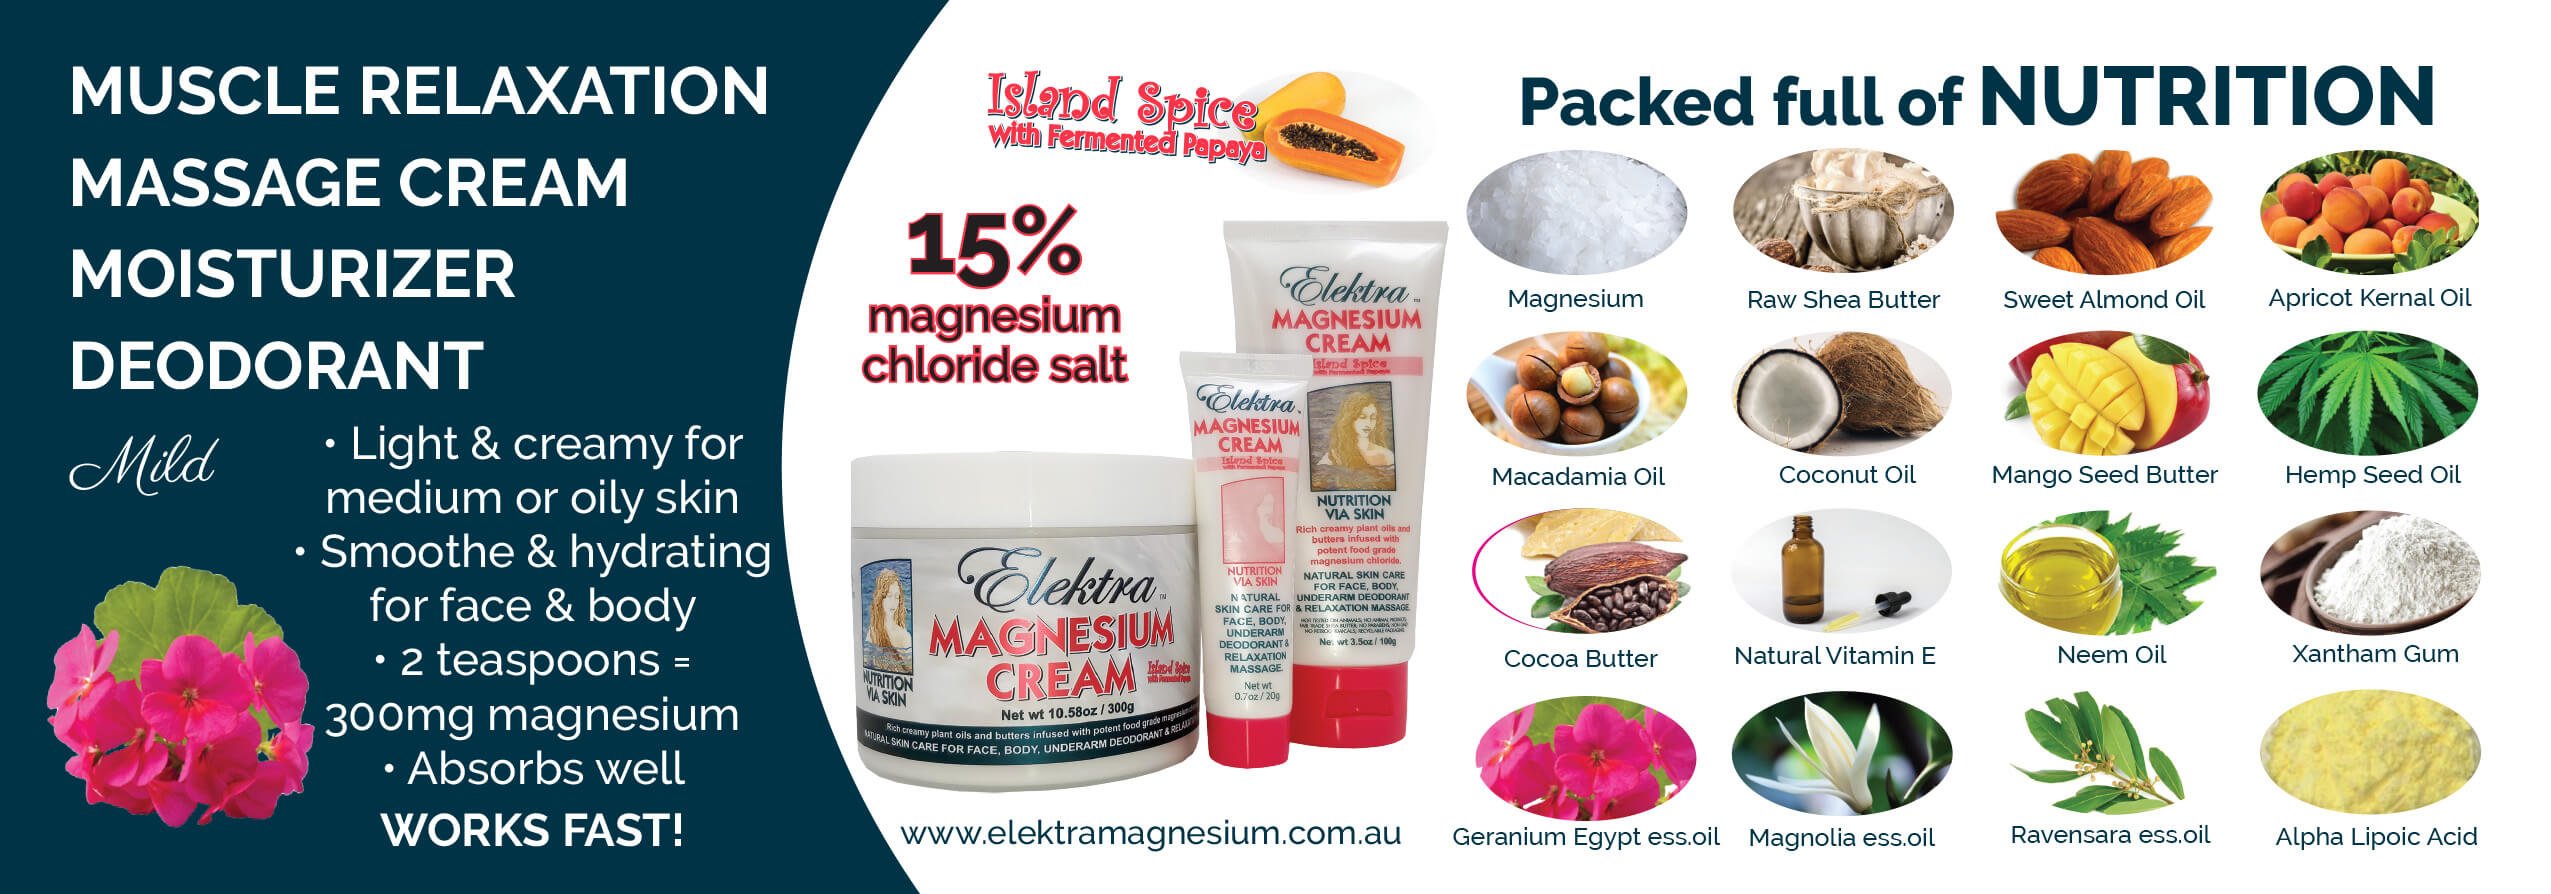 Island Spice Magnesium Cream Ingredients